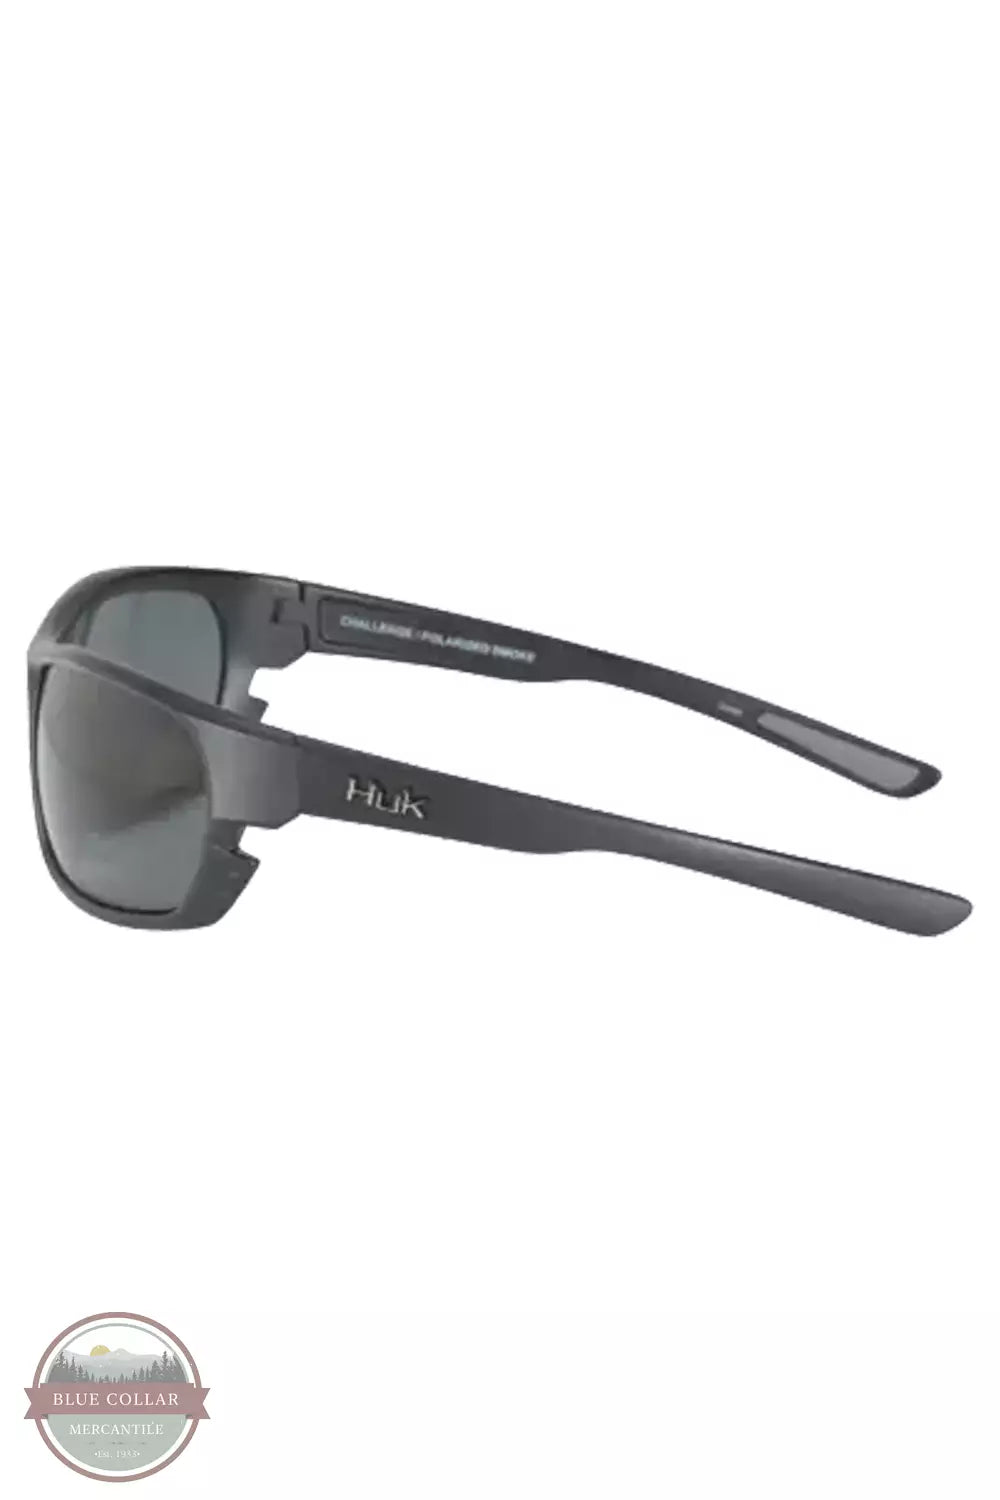 Huk E000024600101 Challenge Polarized Sunglasses in Matte Black Frame / Gray Lens Side View